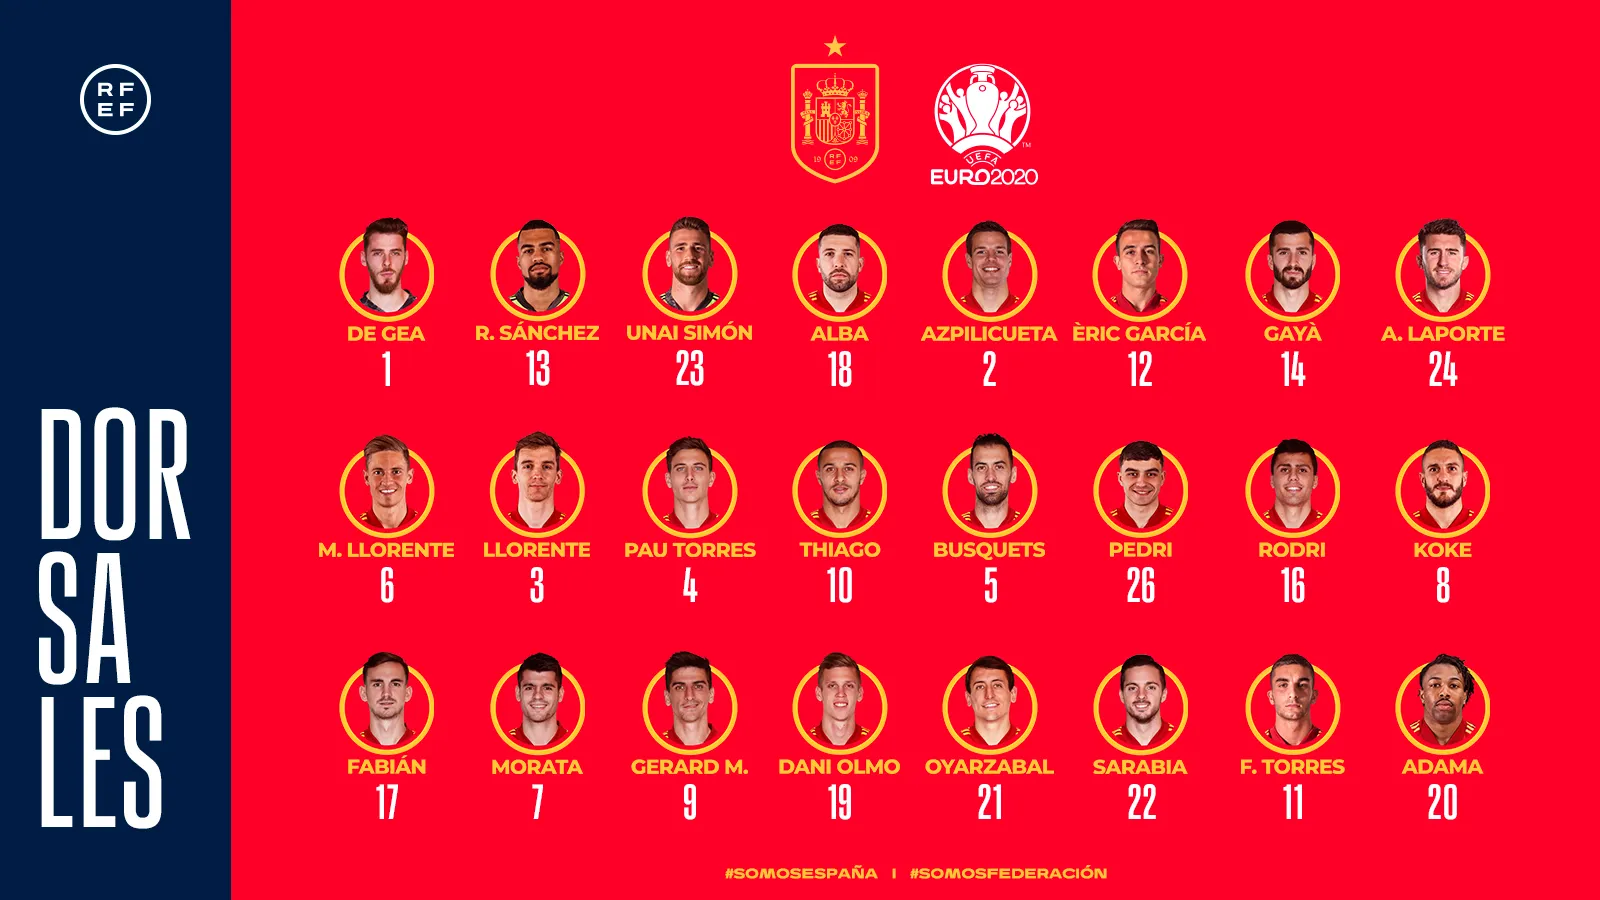 Qué dorsales y números usan los jugadores de la Selección España en la Eurocopa 2021 | Espana